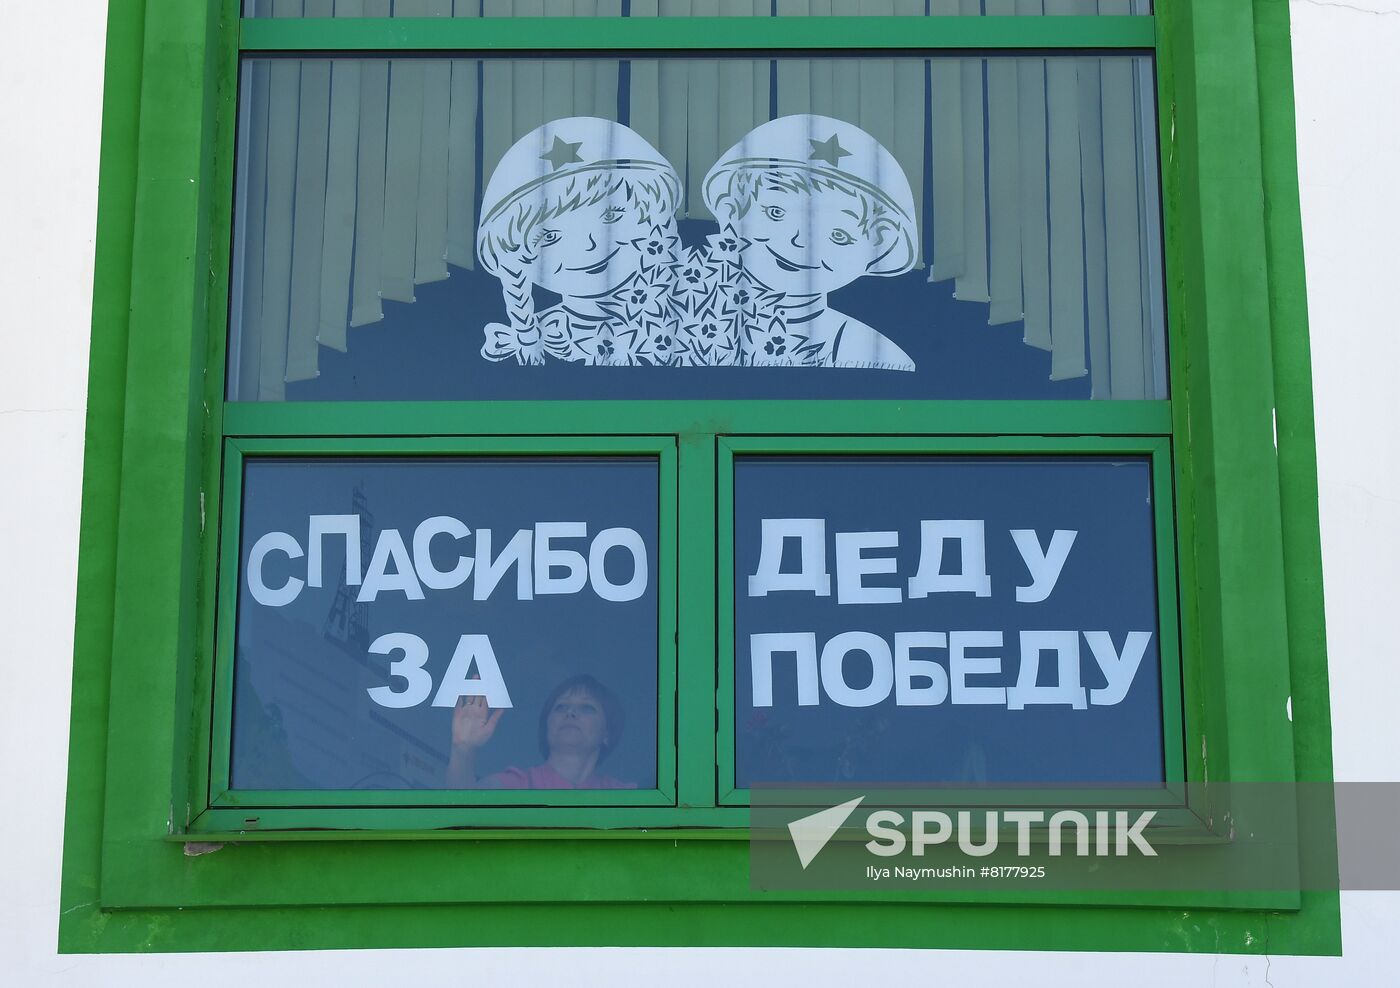 Russia Victory Windows Campaign